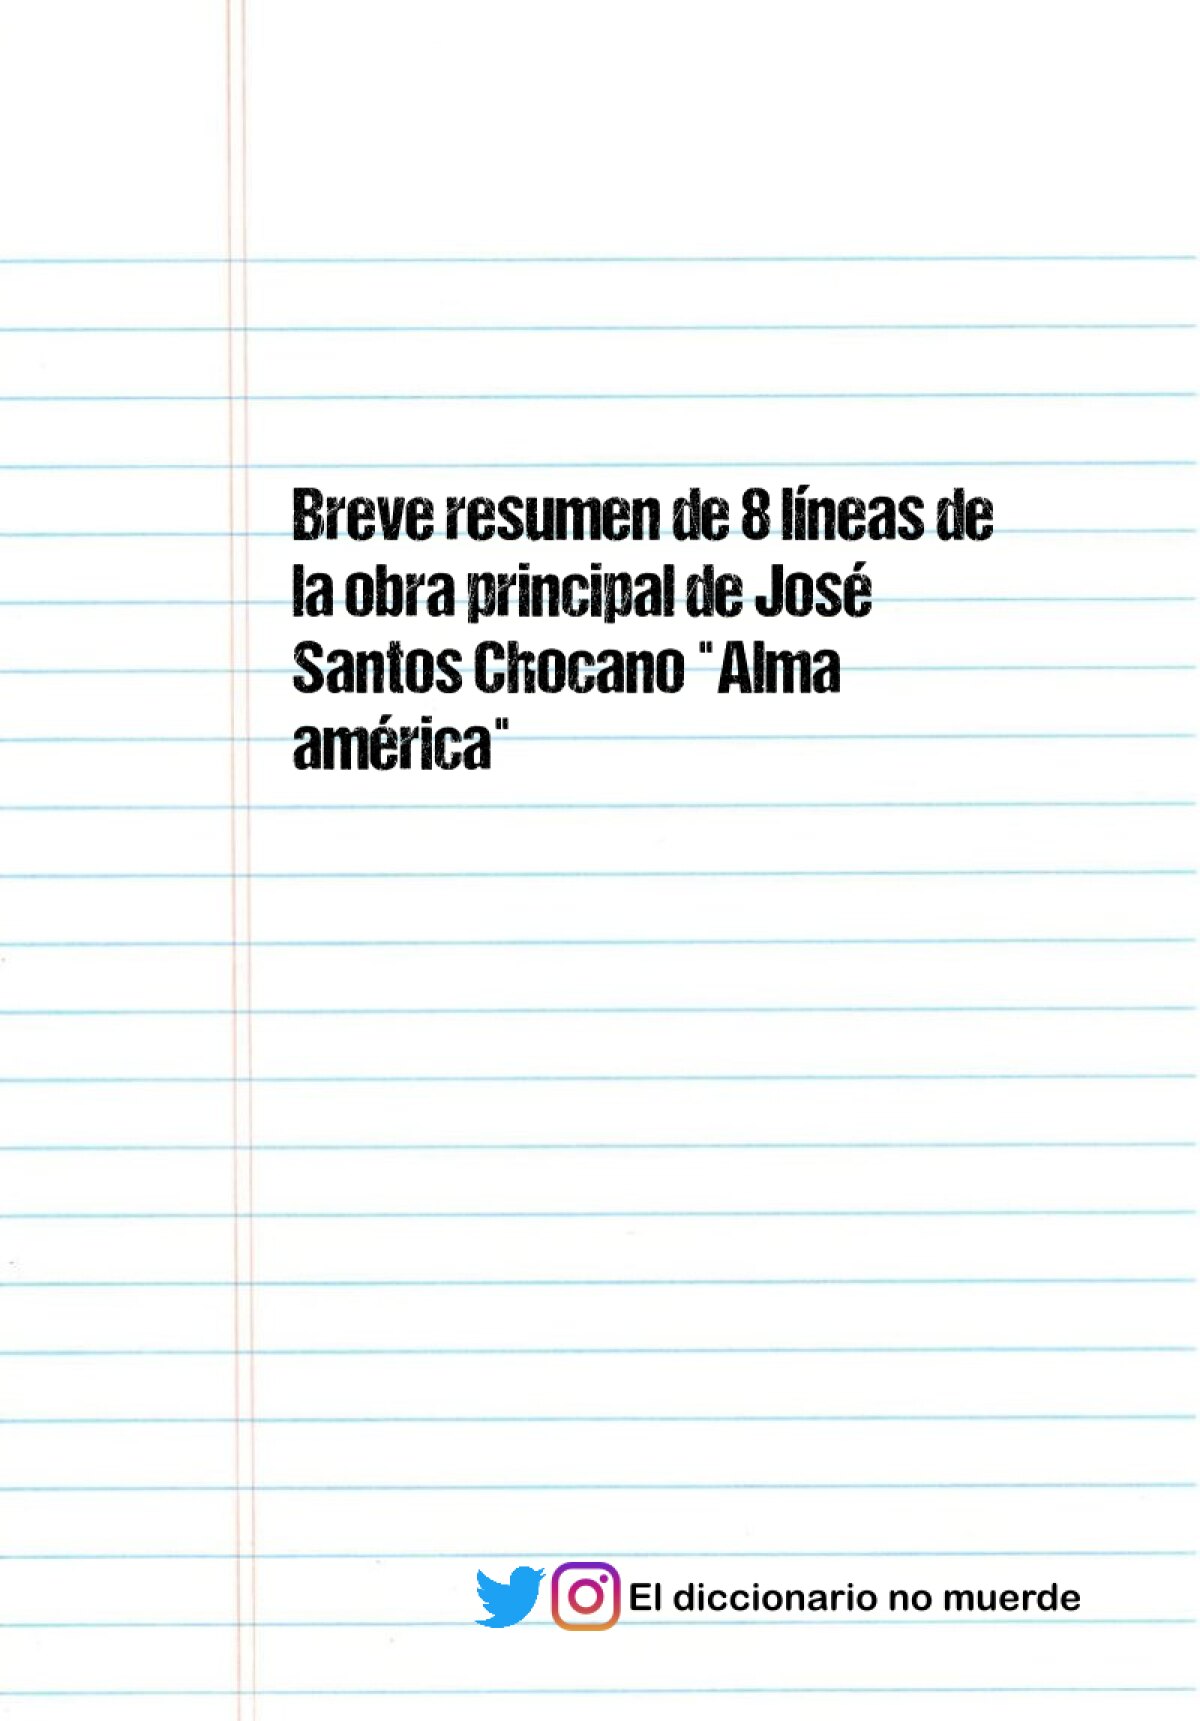 Breve resumen de 8 líneas de la obra principal de José Santos Chocano "Alma américa"